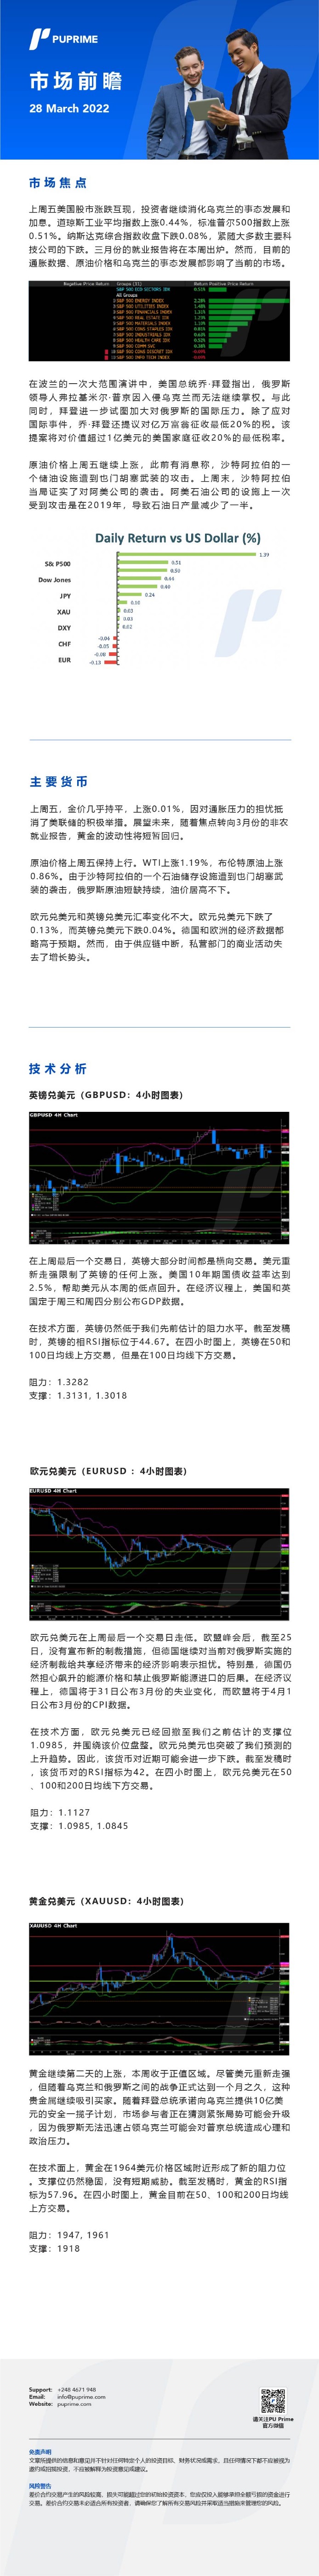 28032022 Daily Market Analysis__CHN.jpg